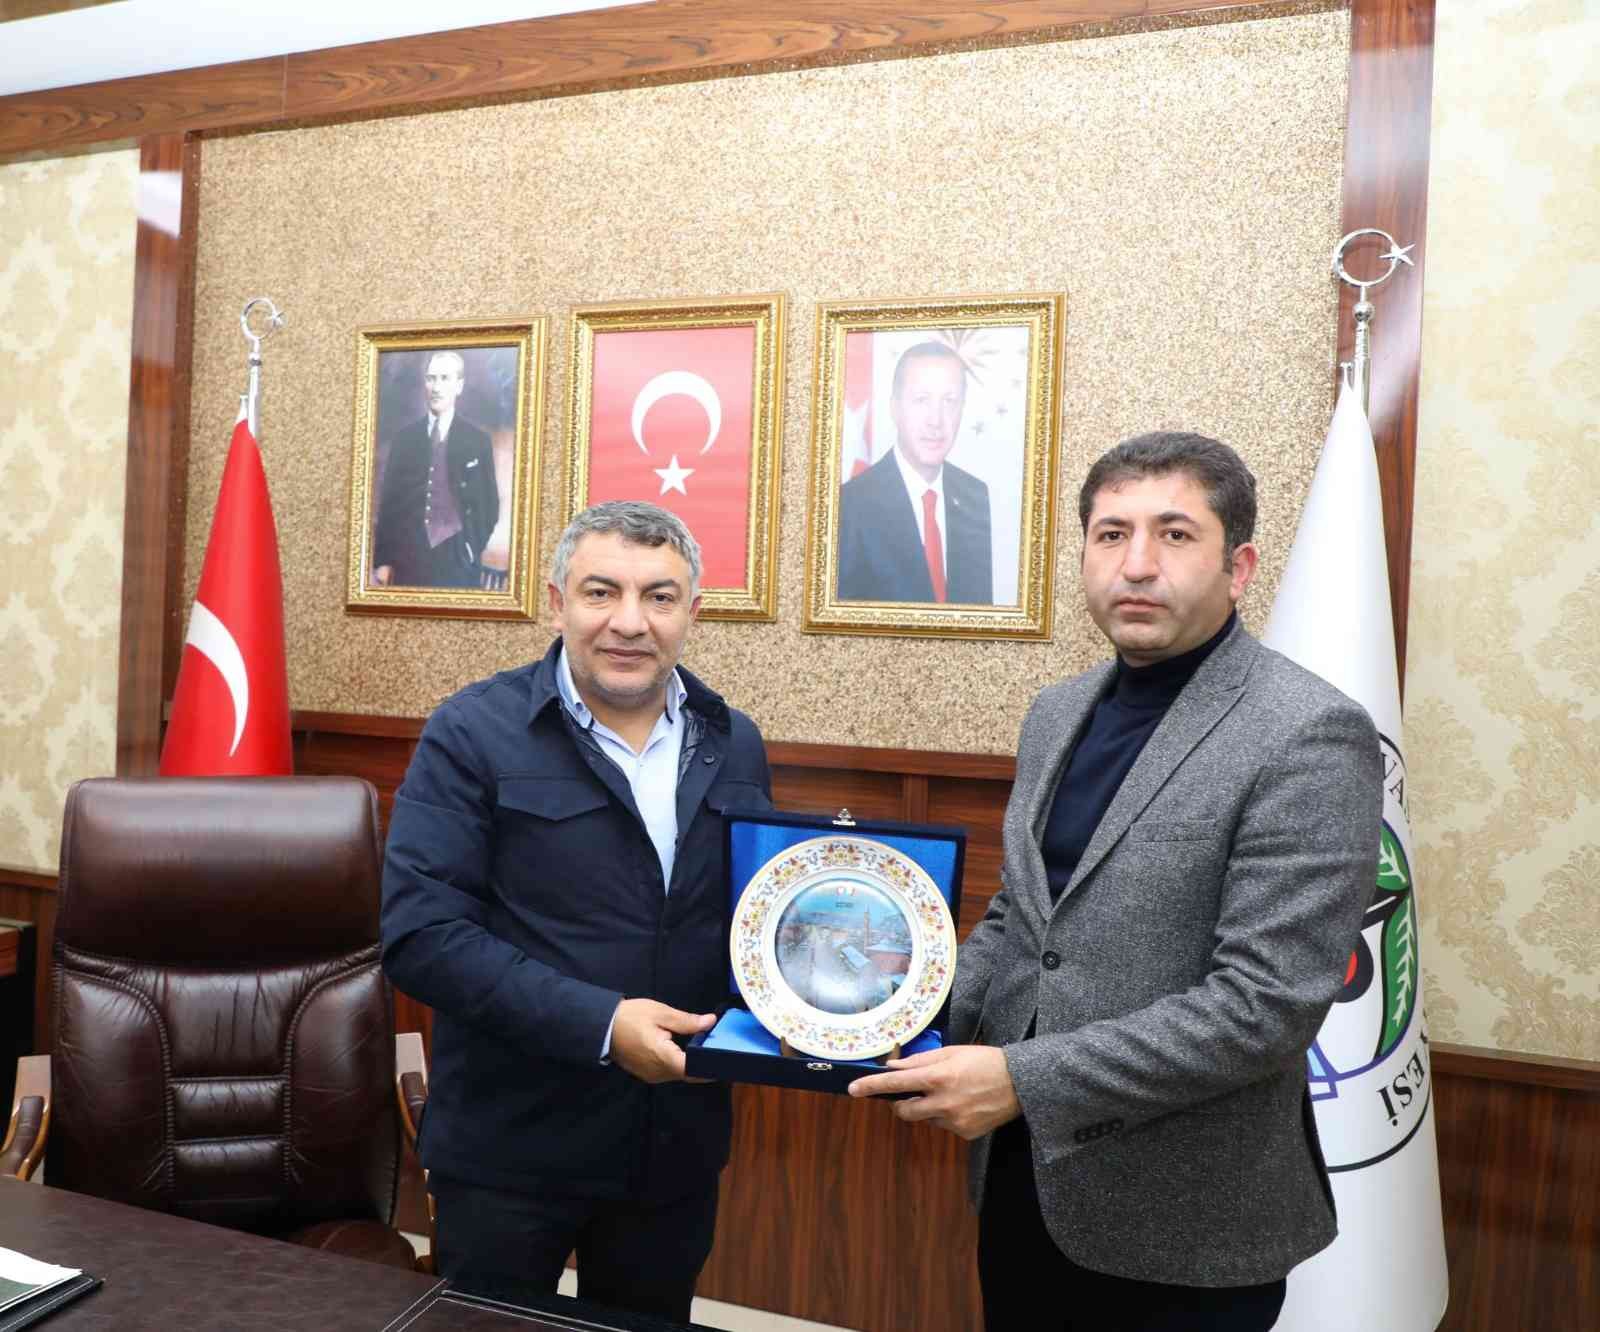 Başkan Şayir, Zara Belediye Başkanı Çelik’i ağırladı